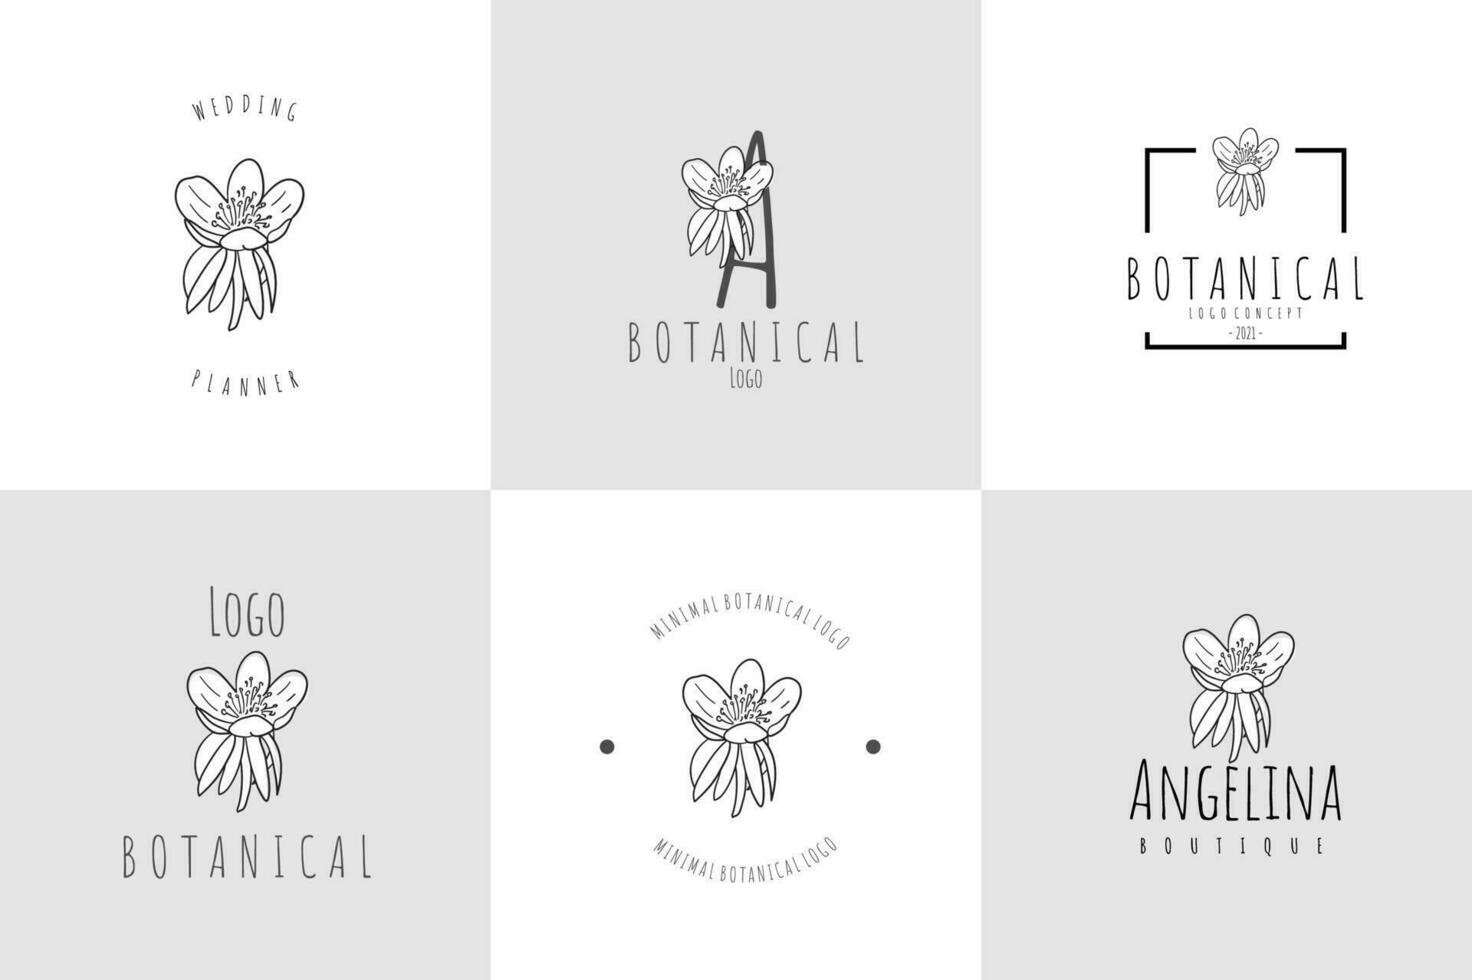 linha arte minimalista flor logotipo pacote vetor